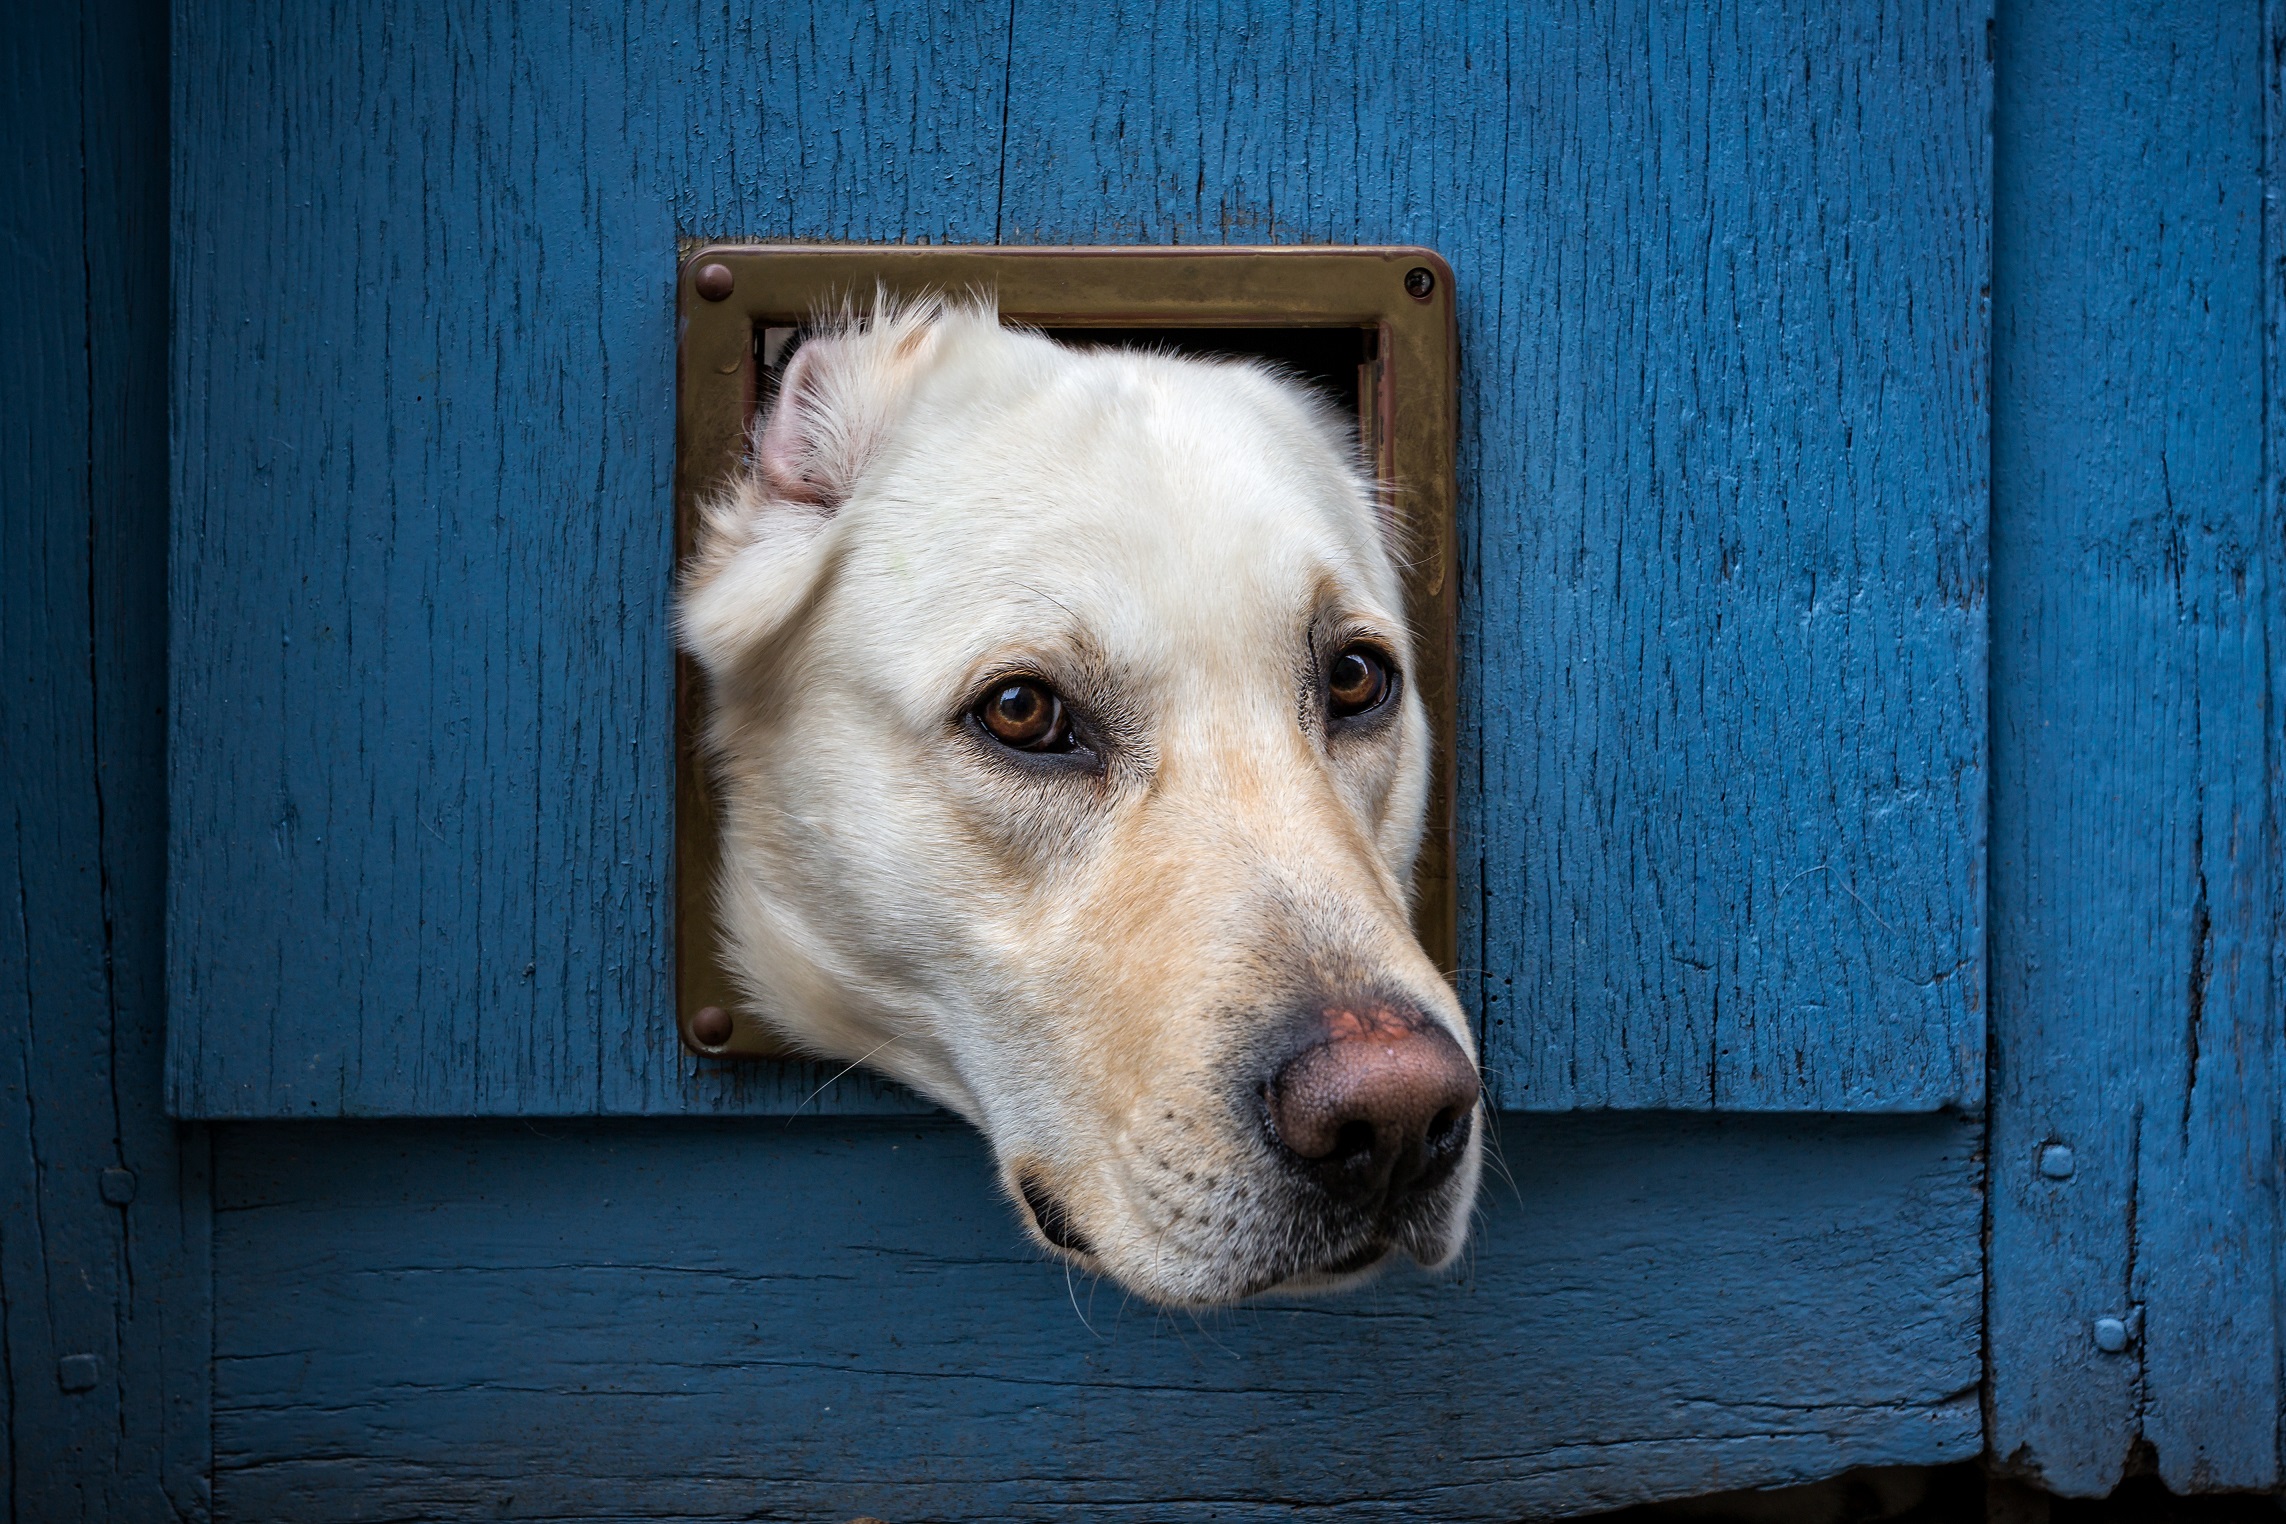 Dog stuck in pet door